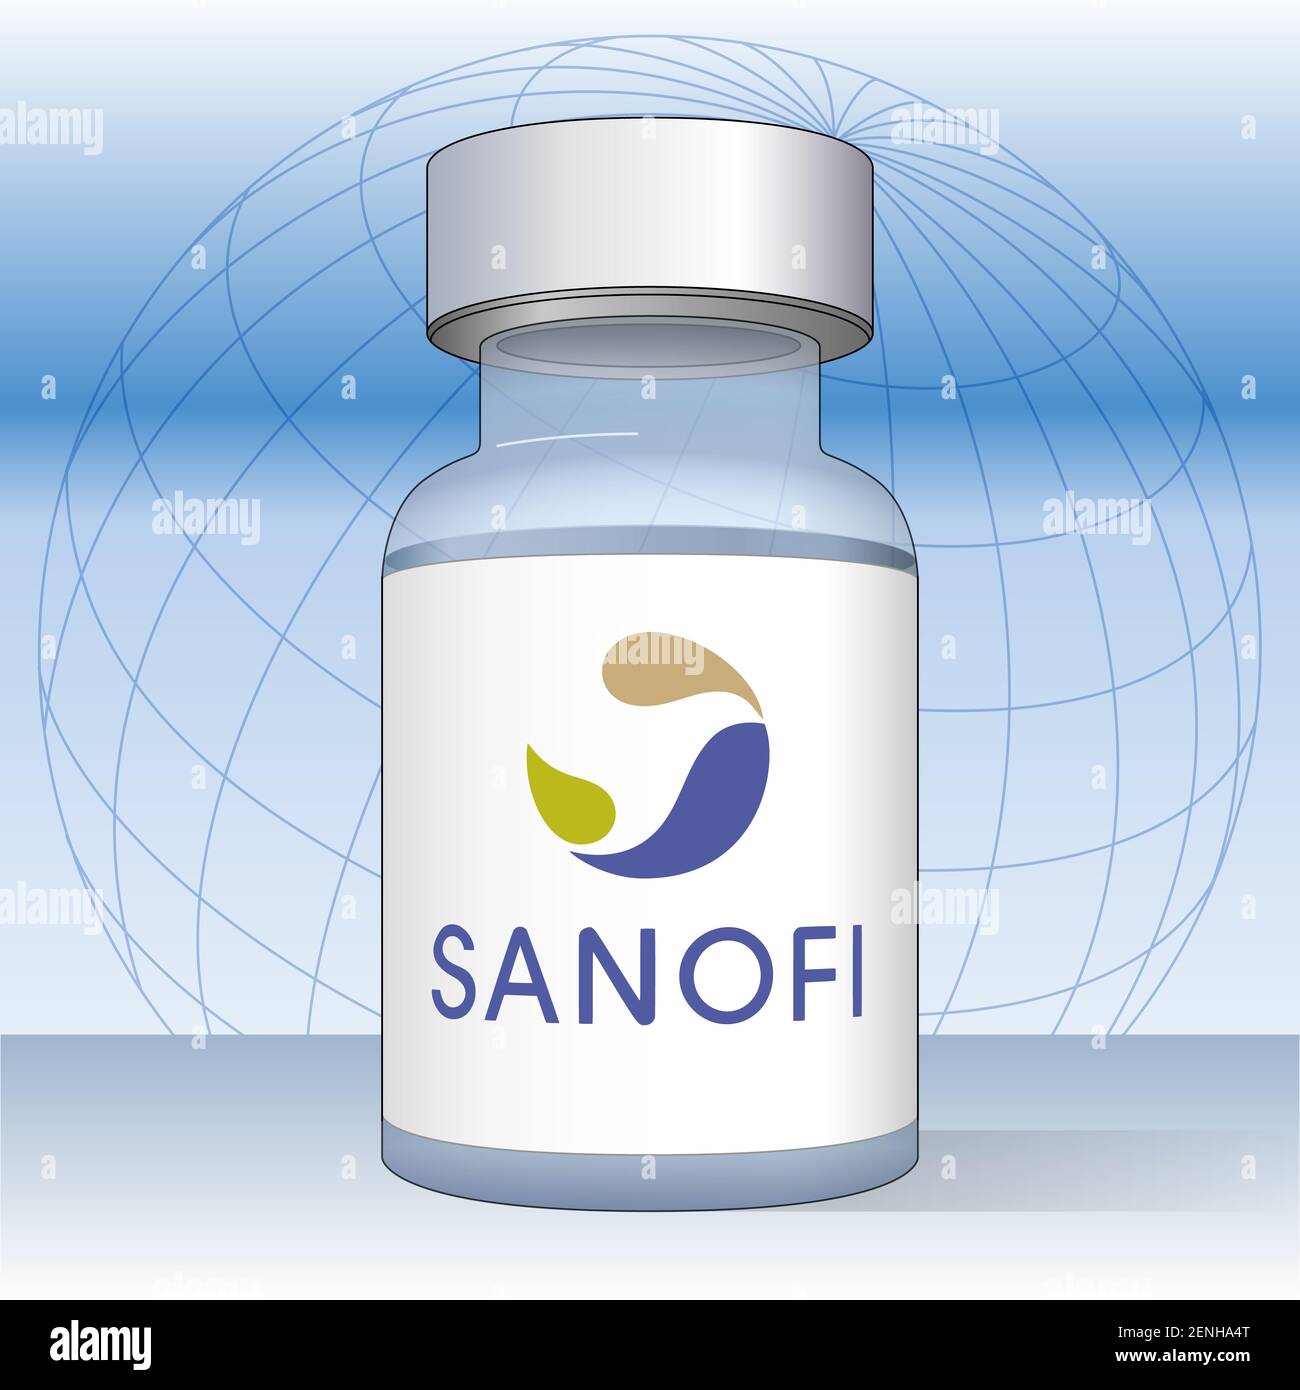 Flacon de vaccin anti Covid-19 avec étiquette Sanofi, illustration vectorielle sur le fond du design mondial Banque D'Images